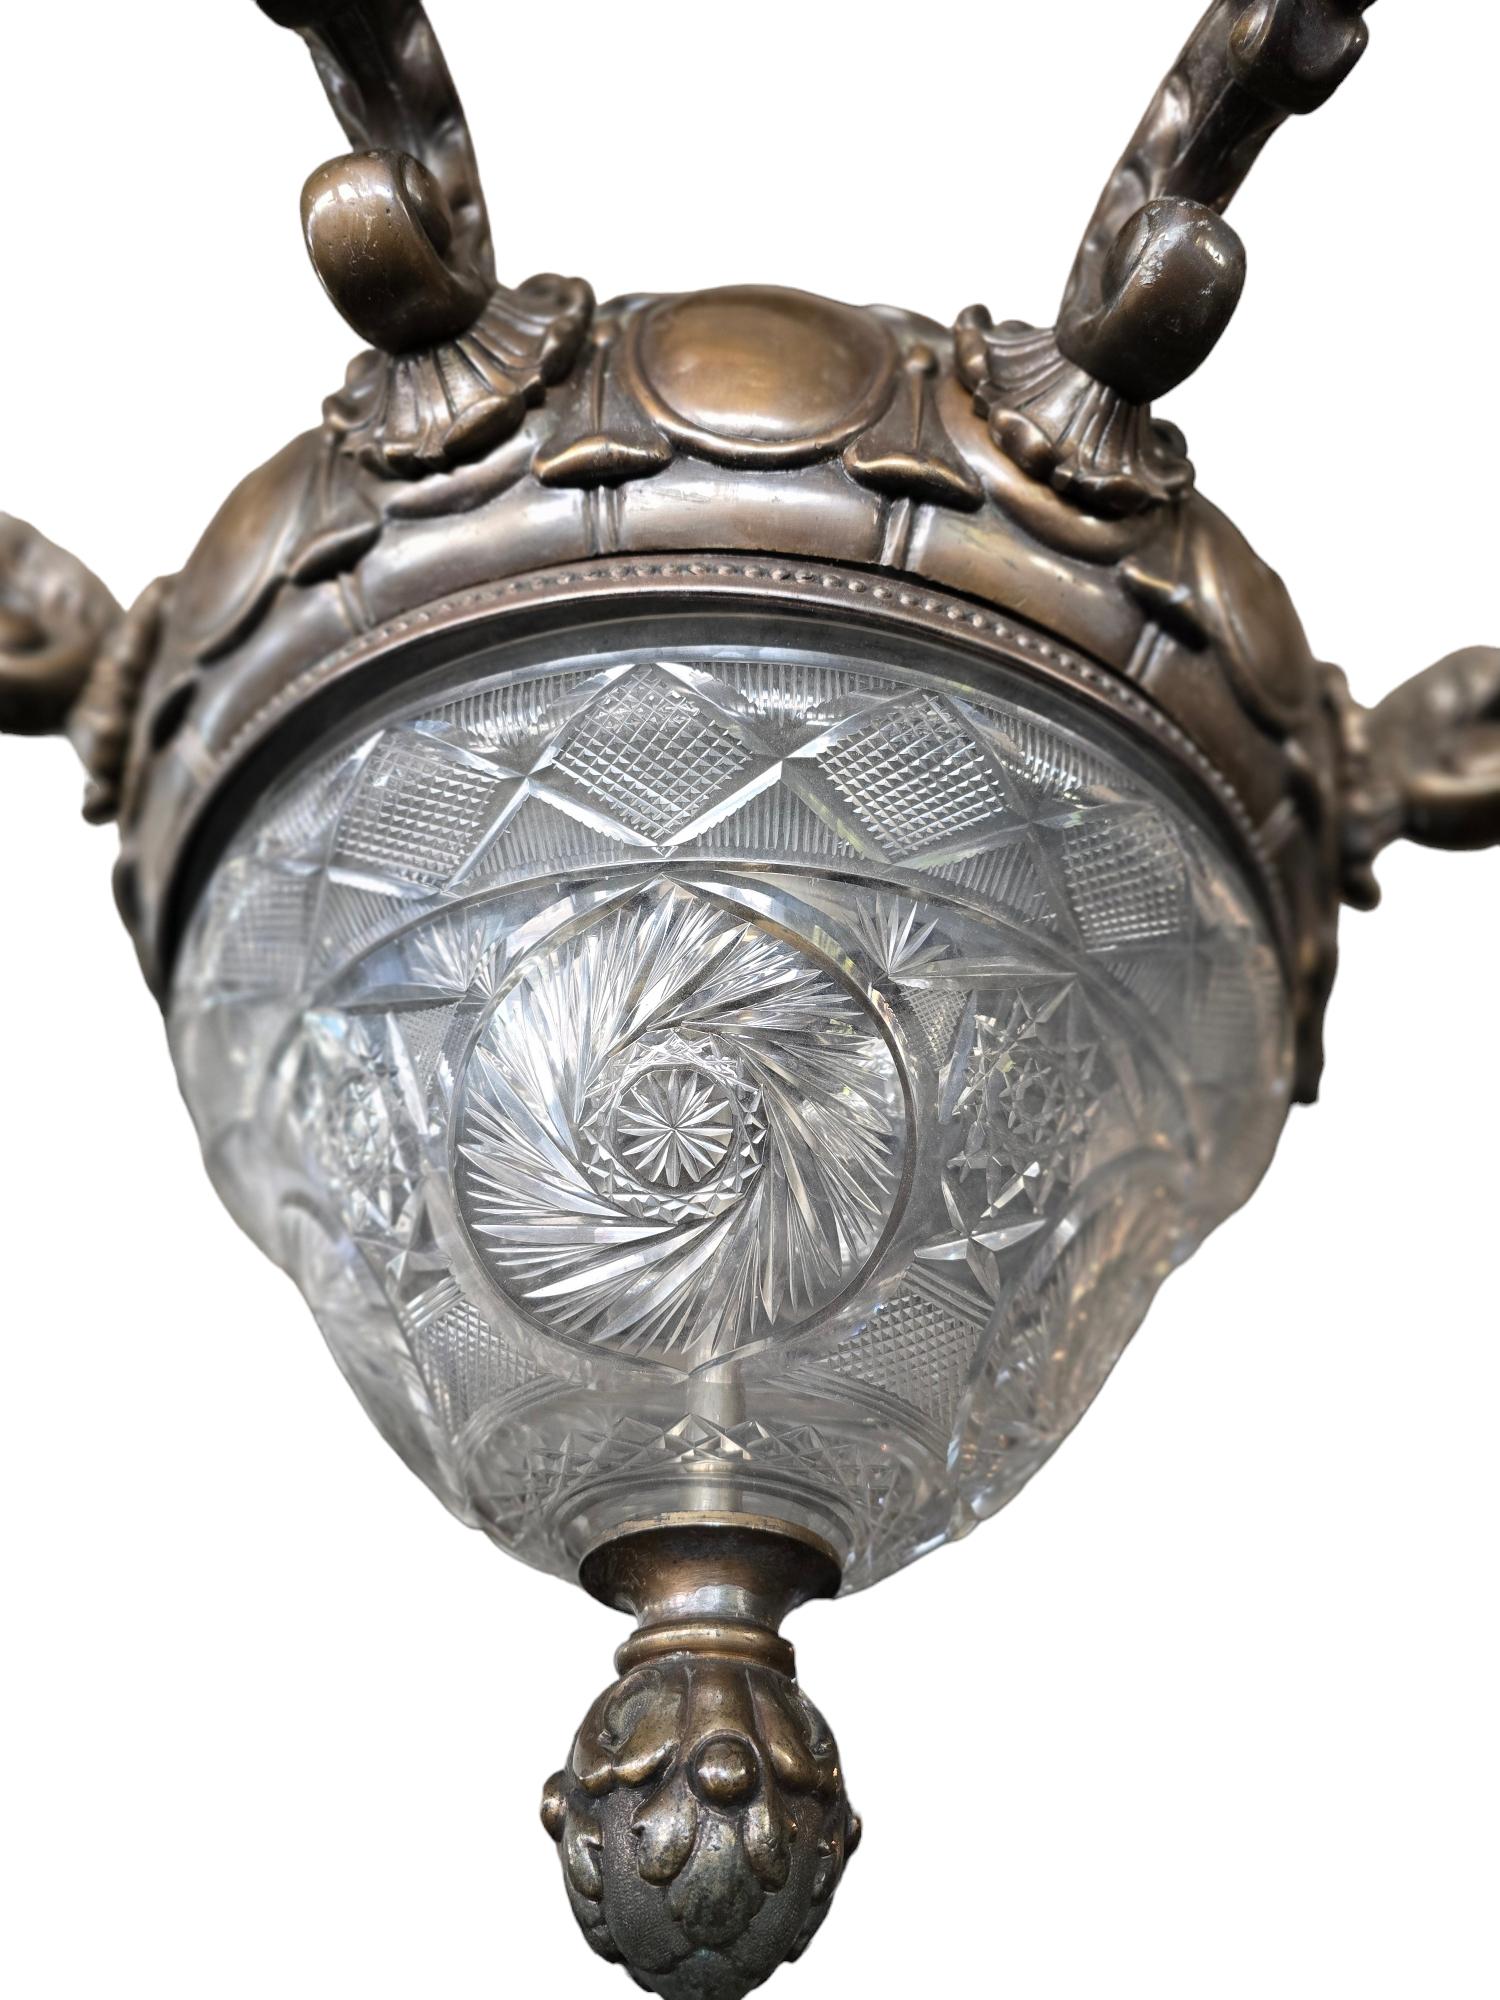 Ez egy hihetetlen impozáns barokk stílusban bronz csillár.
Mindent üveg részét/ lámpaernyő megvan.
Újra volt vezetékévé.